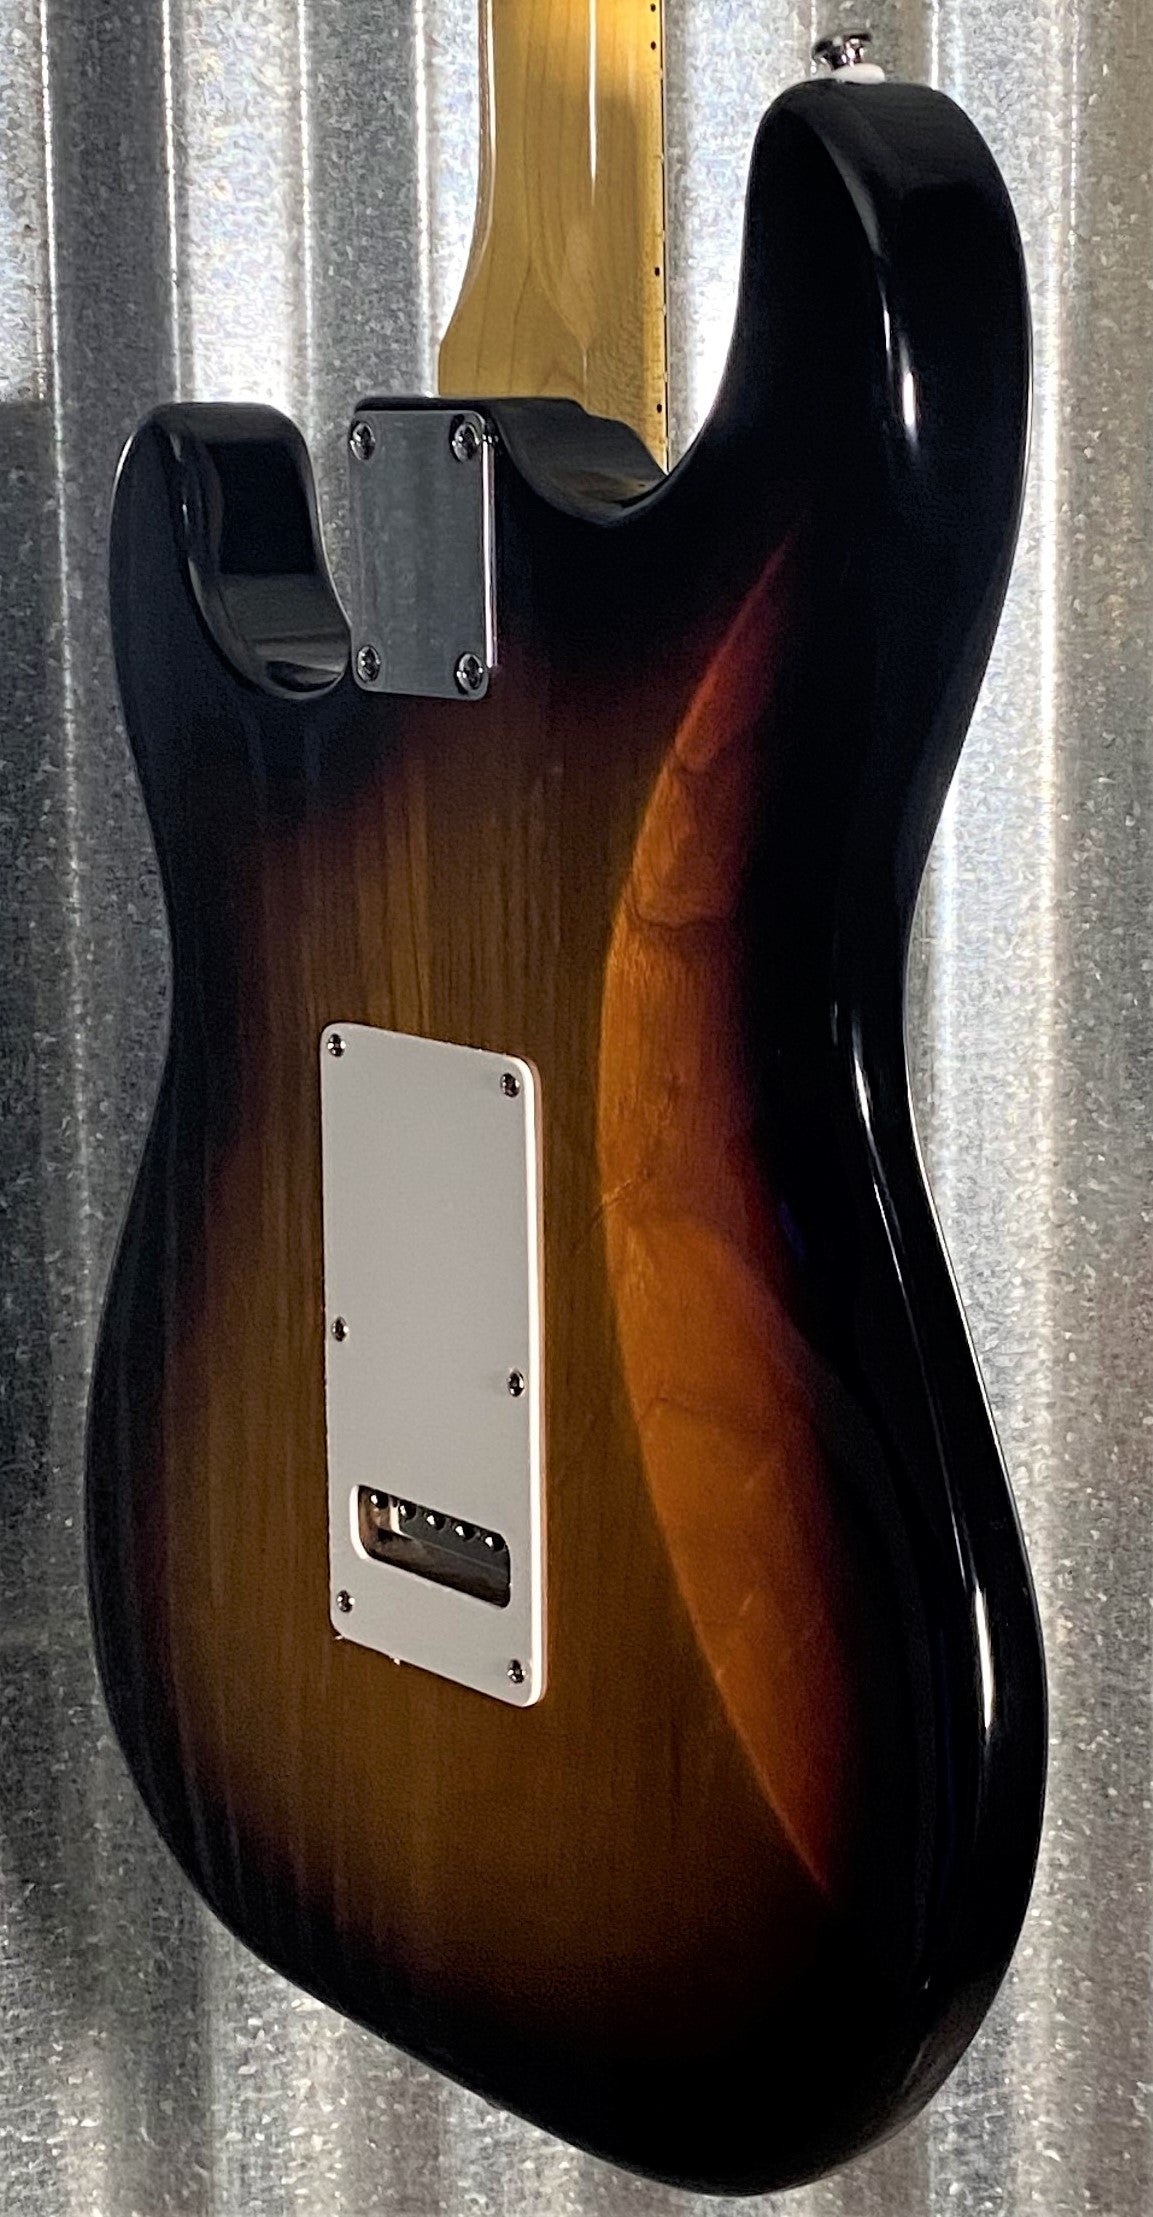 G&L Tribute Legacy HSS 3-Tone Sunburst Guitar #6259